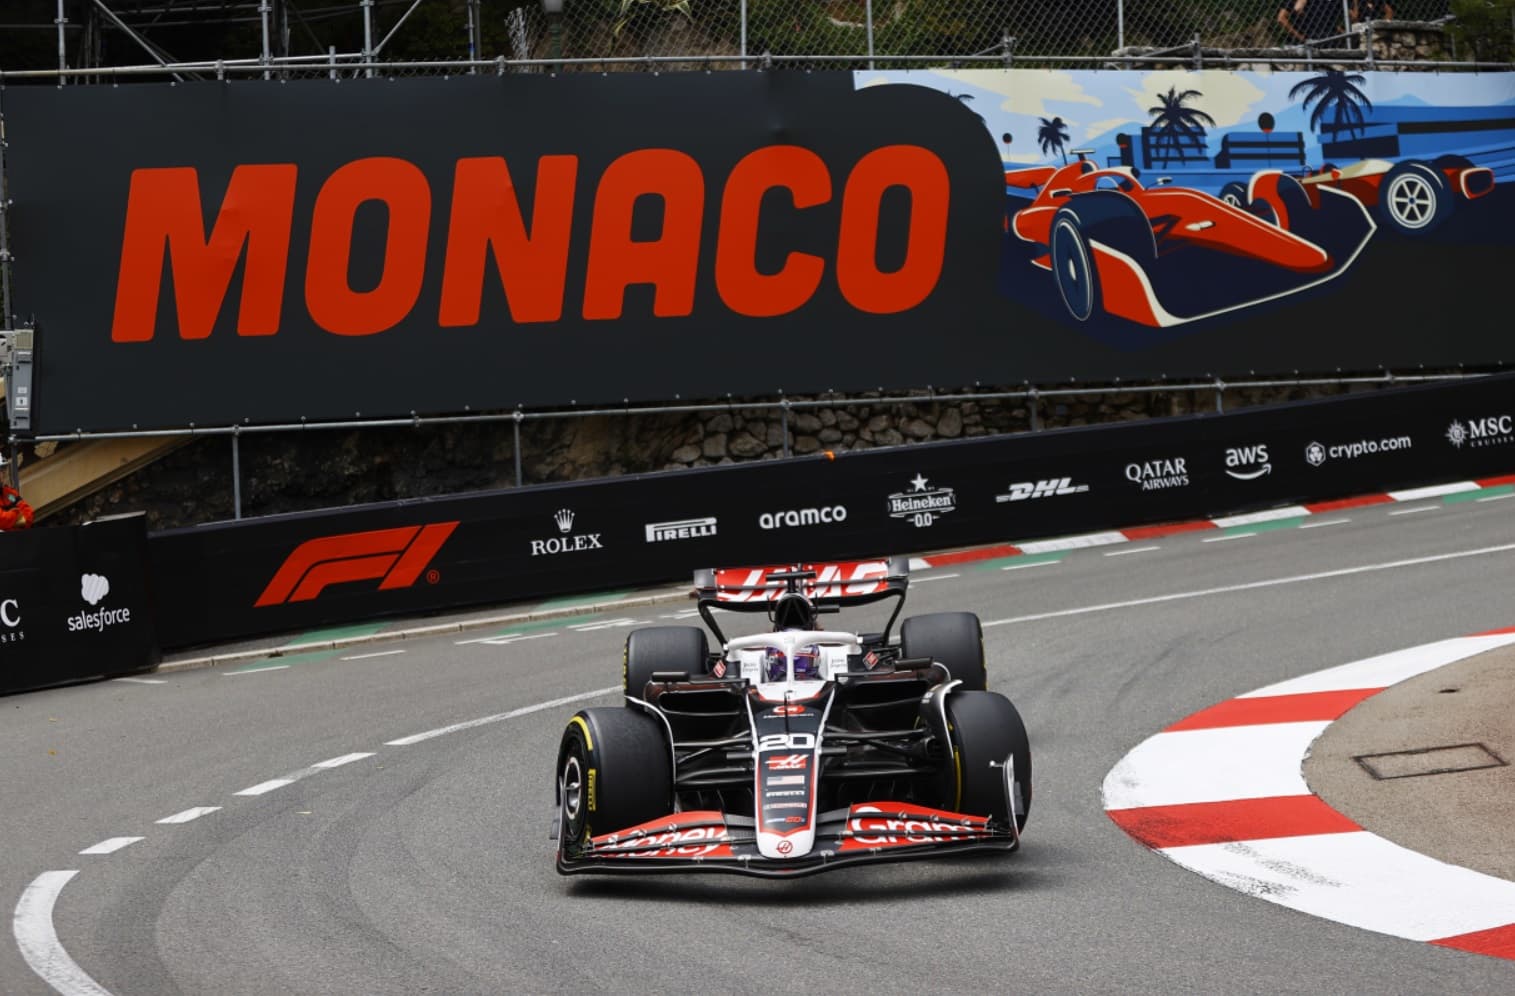 Fotograf F1 ucierpiał podczas wielkiej kraksy na starcie GP Monako 